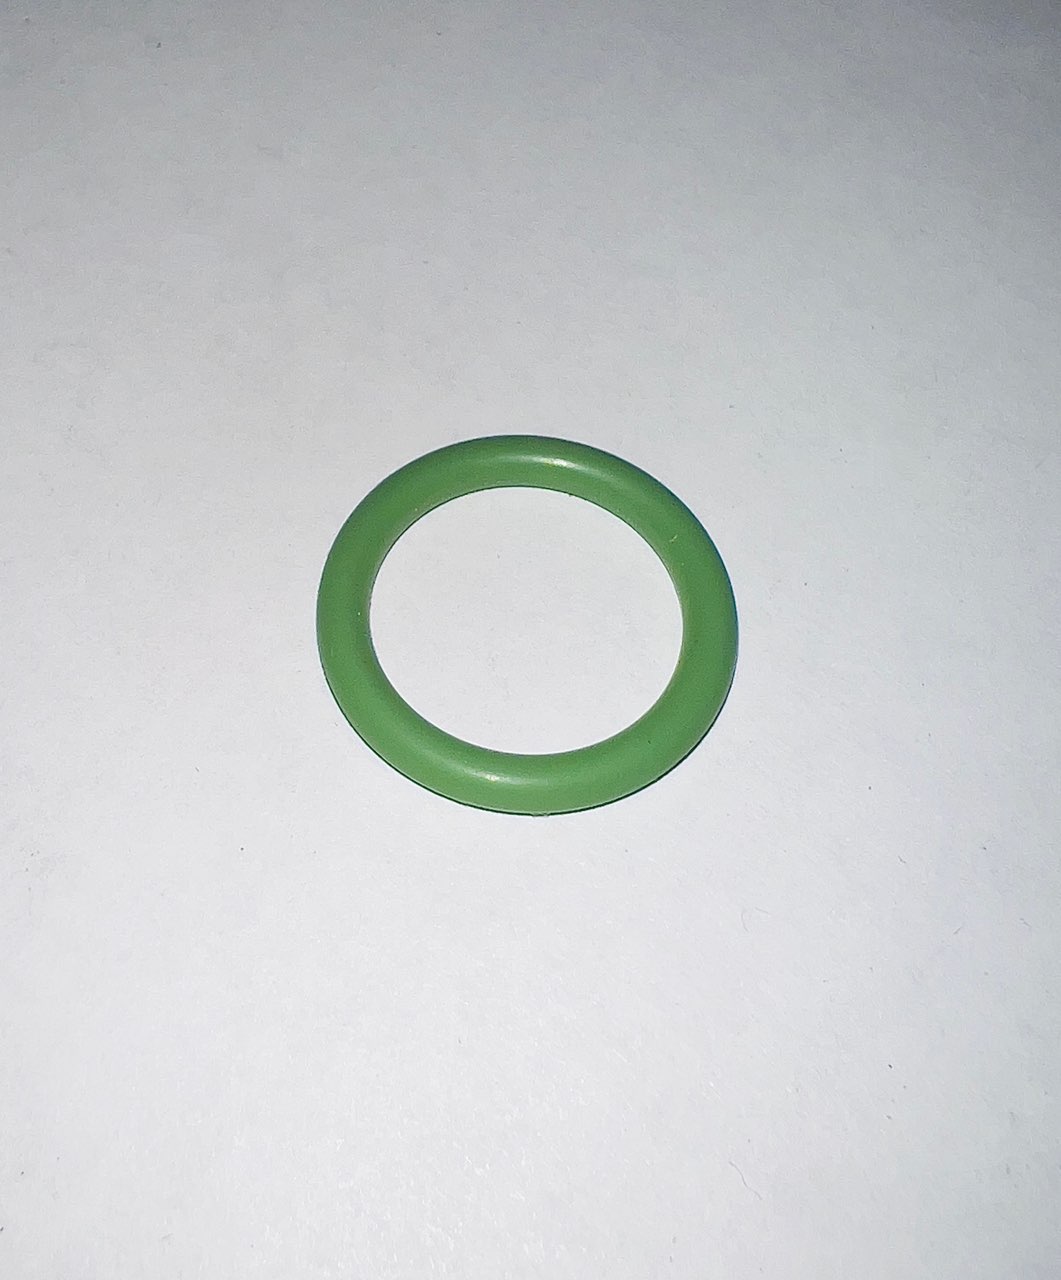 Кольцо уплотнительное (022-028-36)